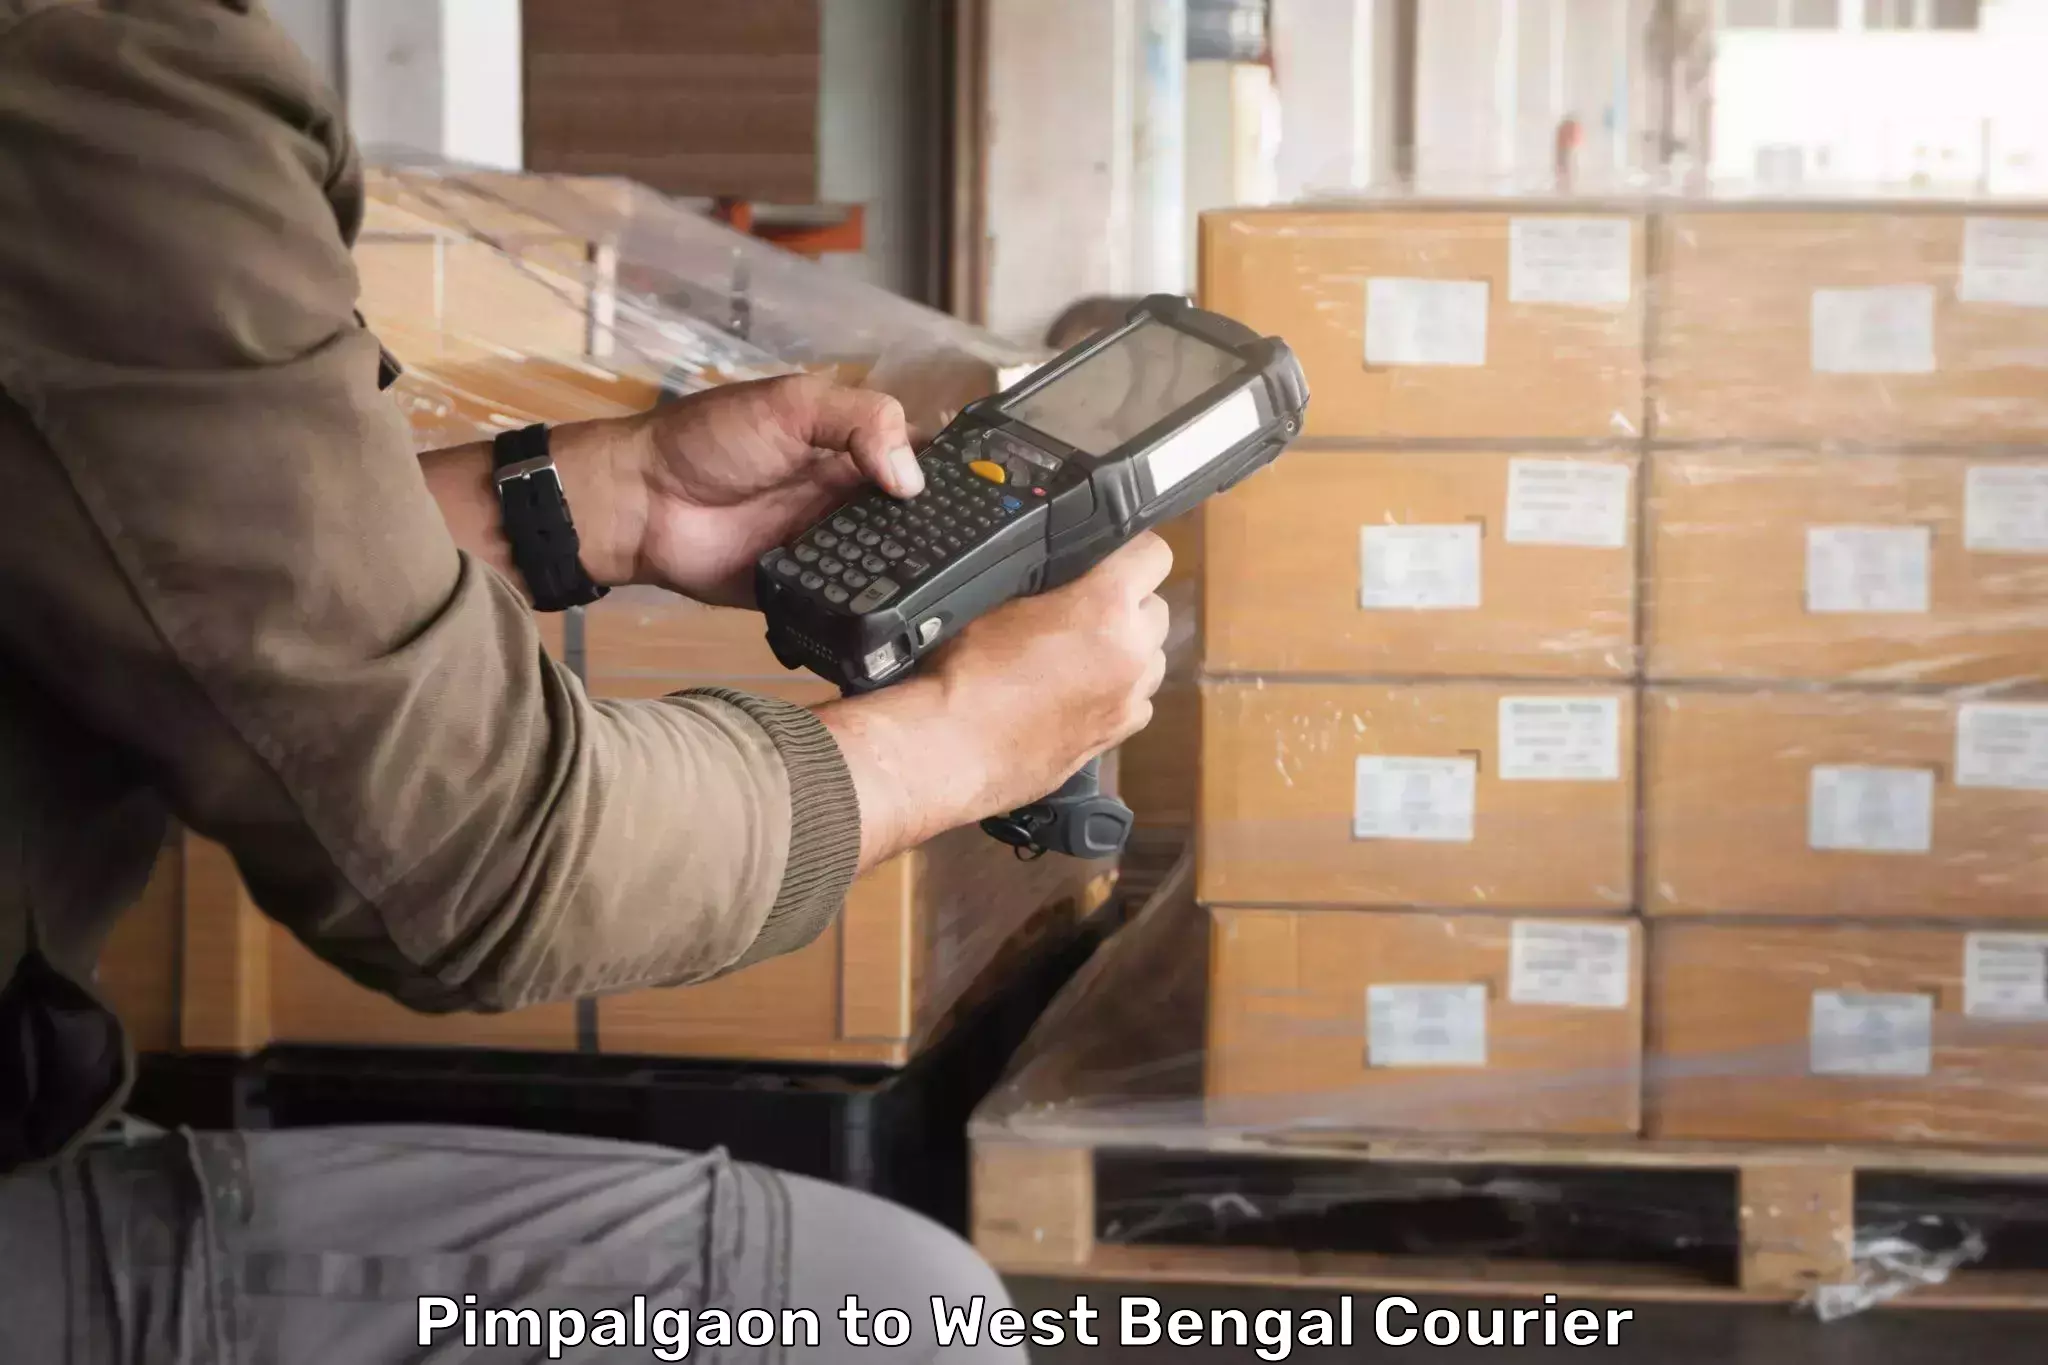 Business shipping needs Pimpalgaon to Barasat